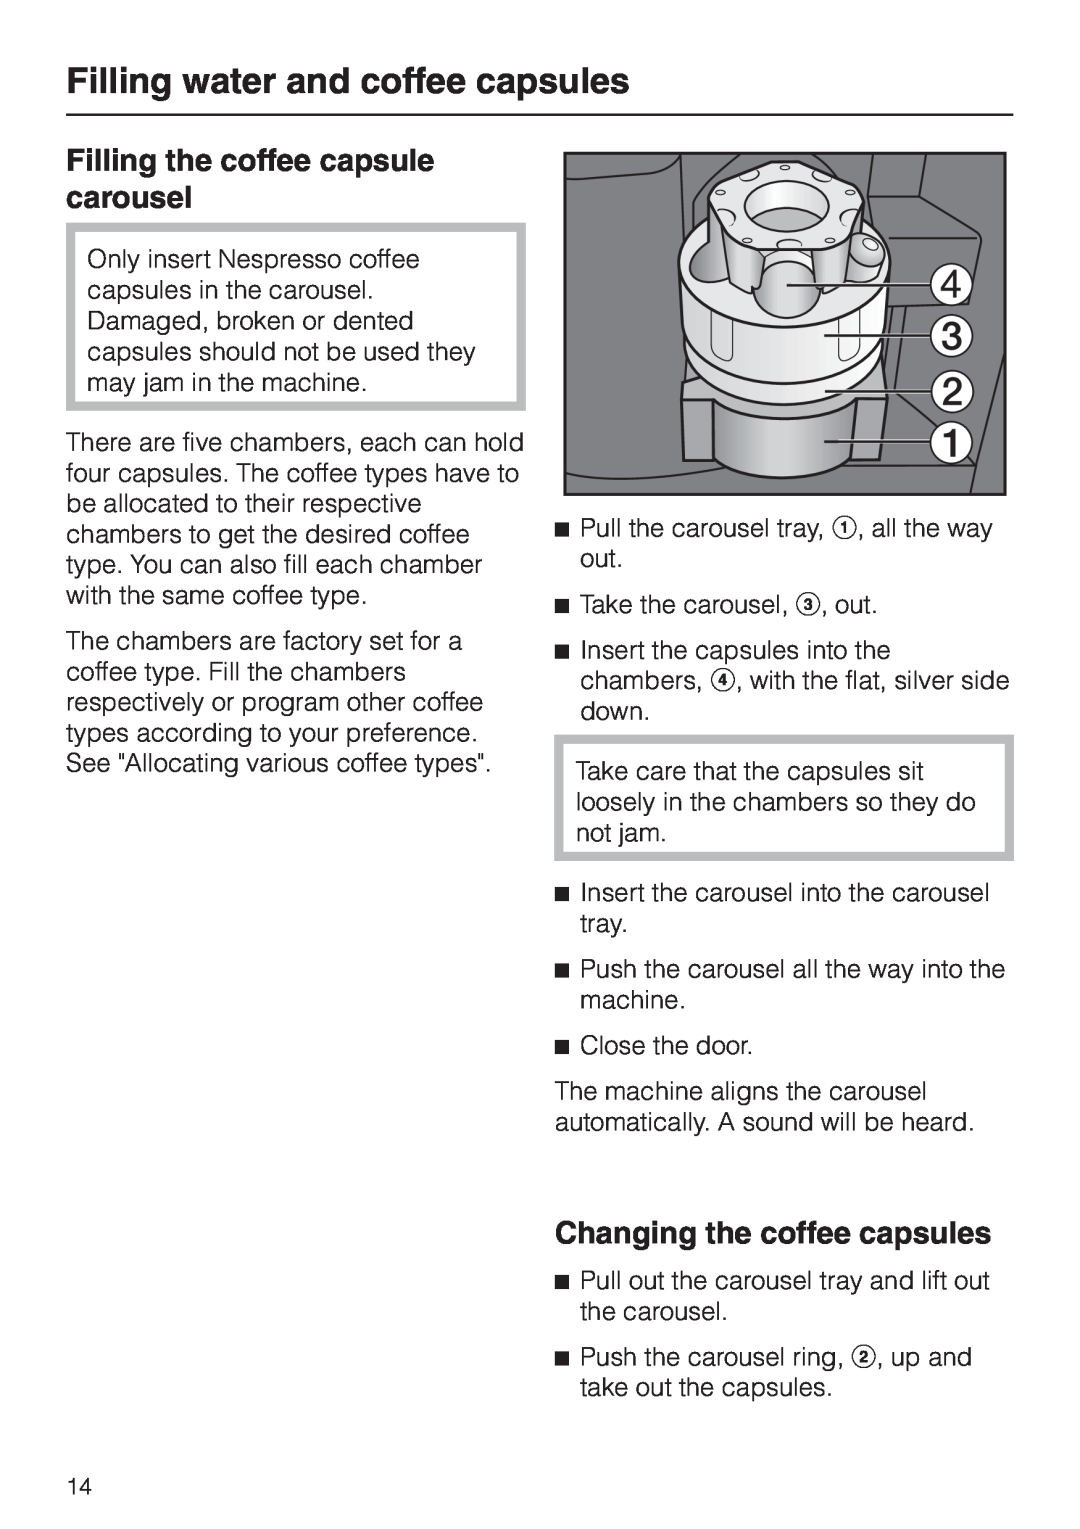 Miele CVA 2660 Filling the coffee capsule carousel, Changing the coffee capsules, Filling water and coffee capsules 